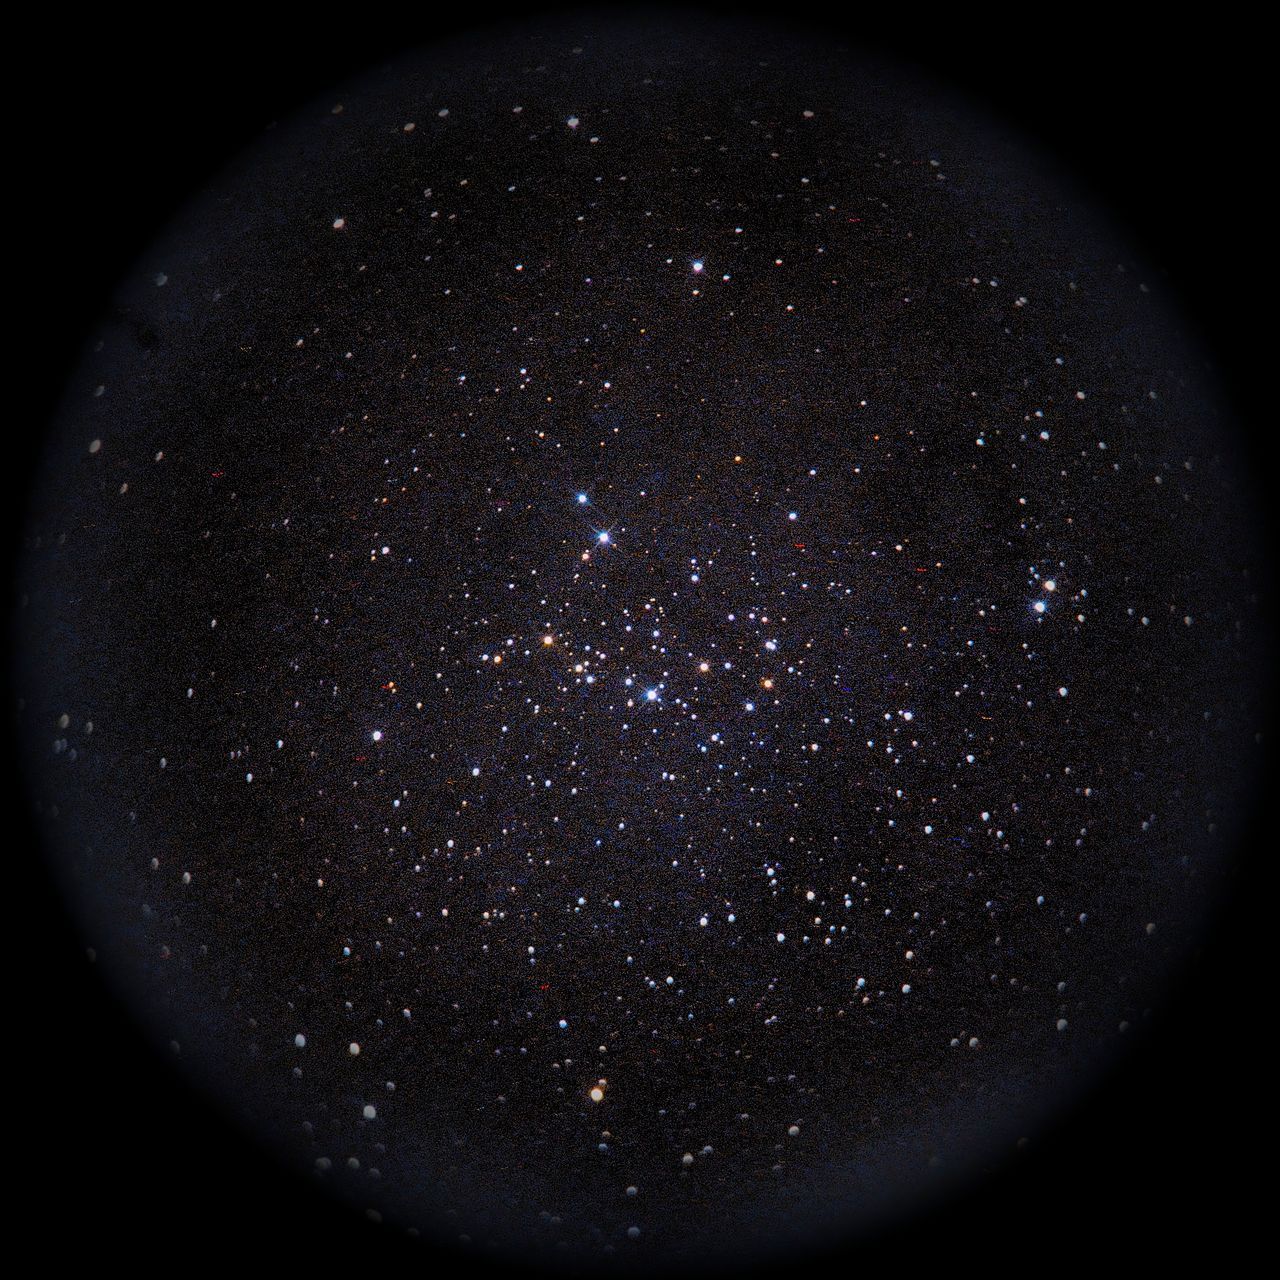 Image of NGC1342